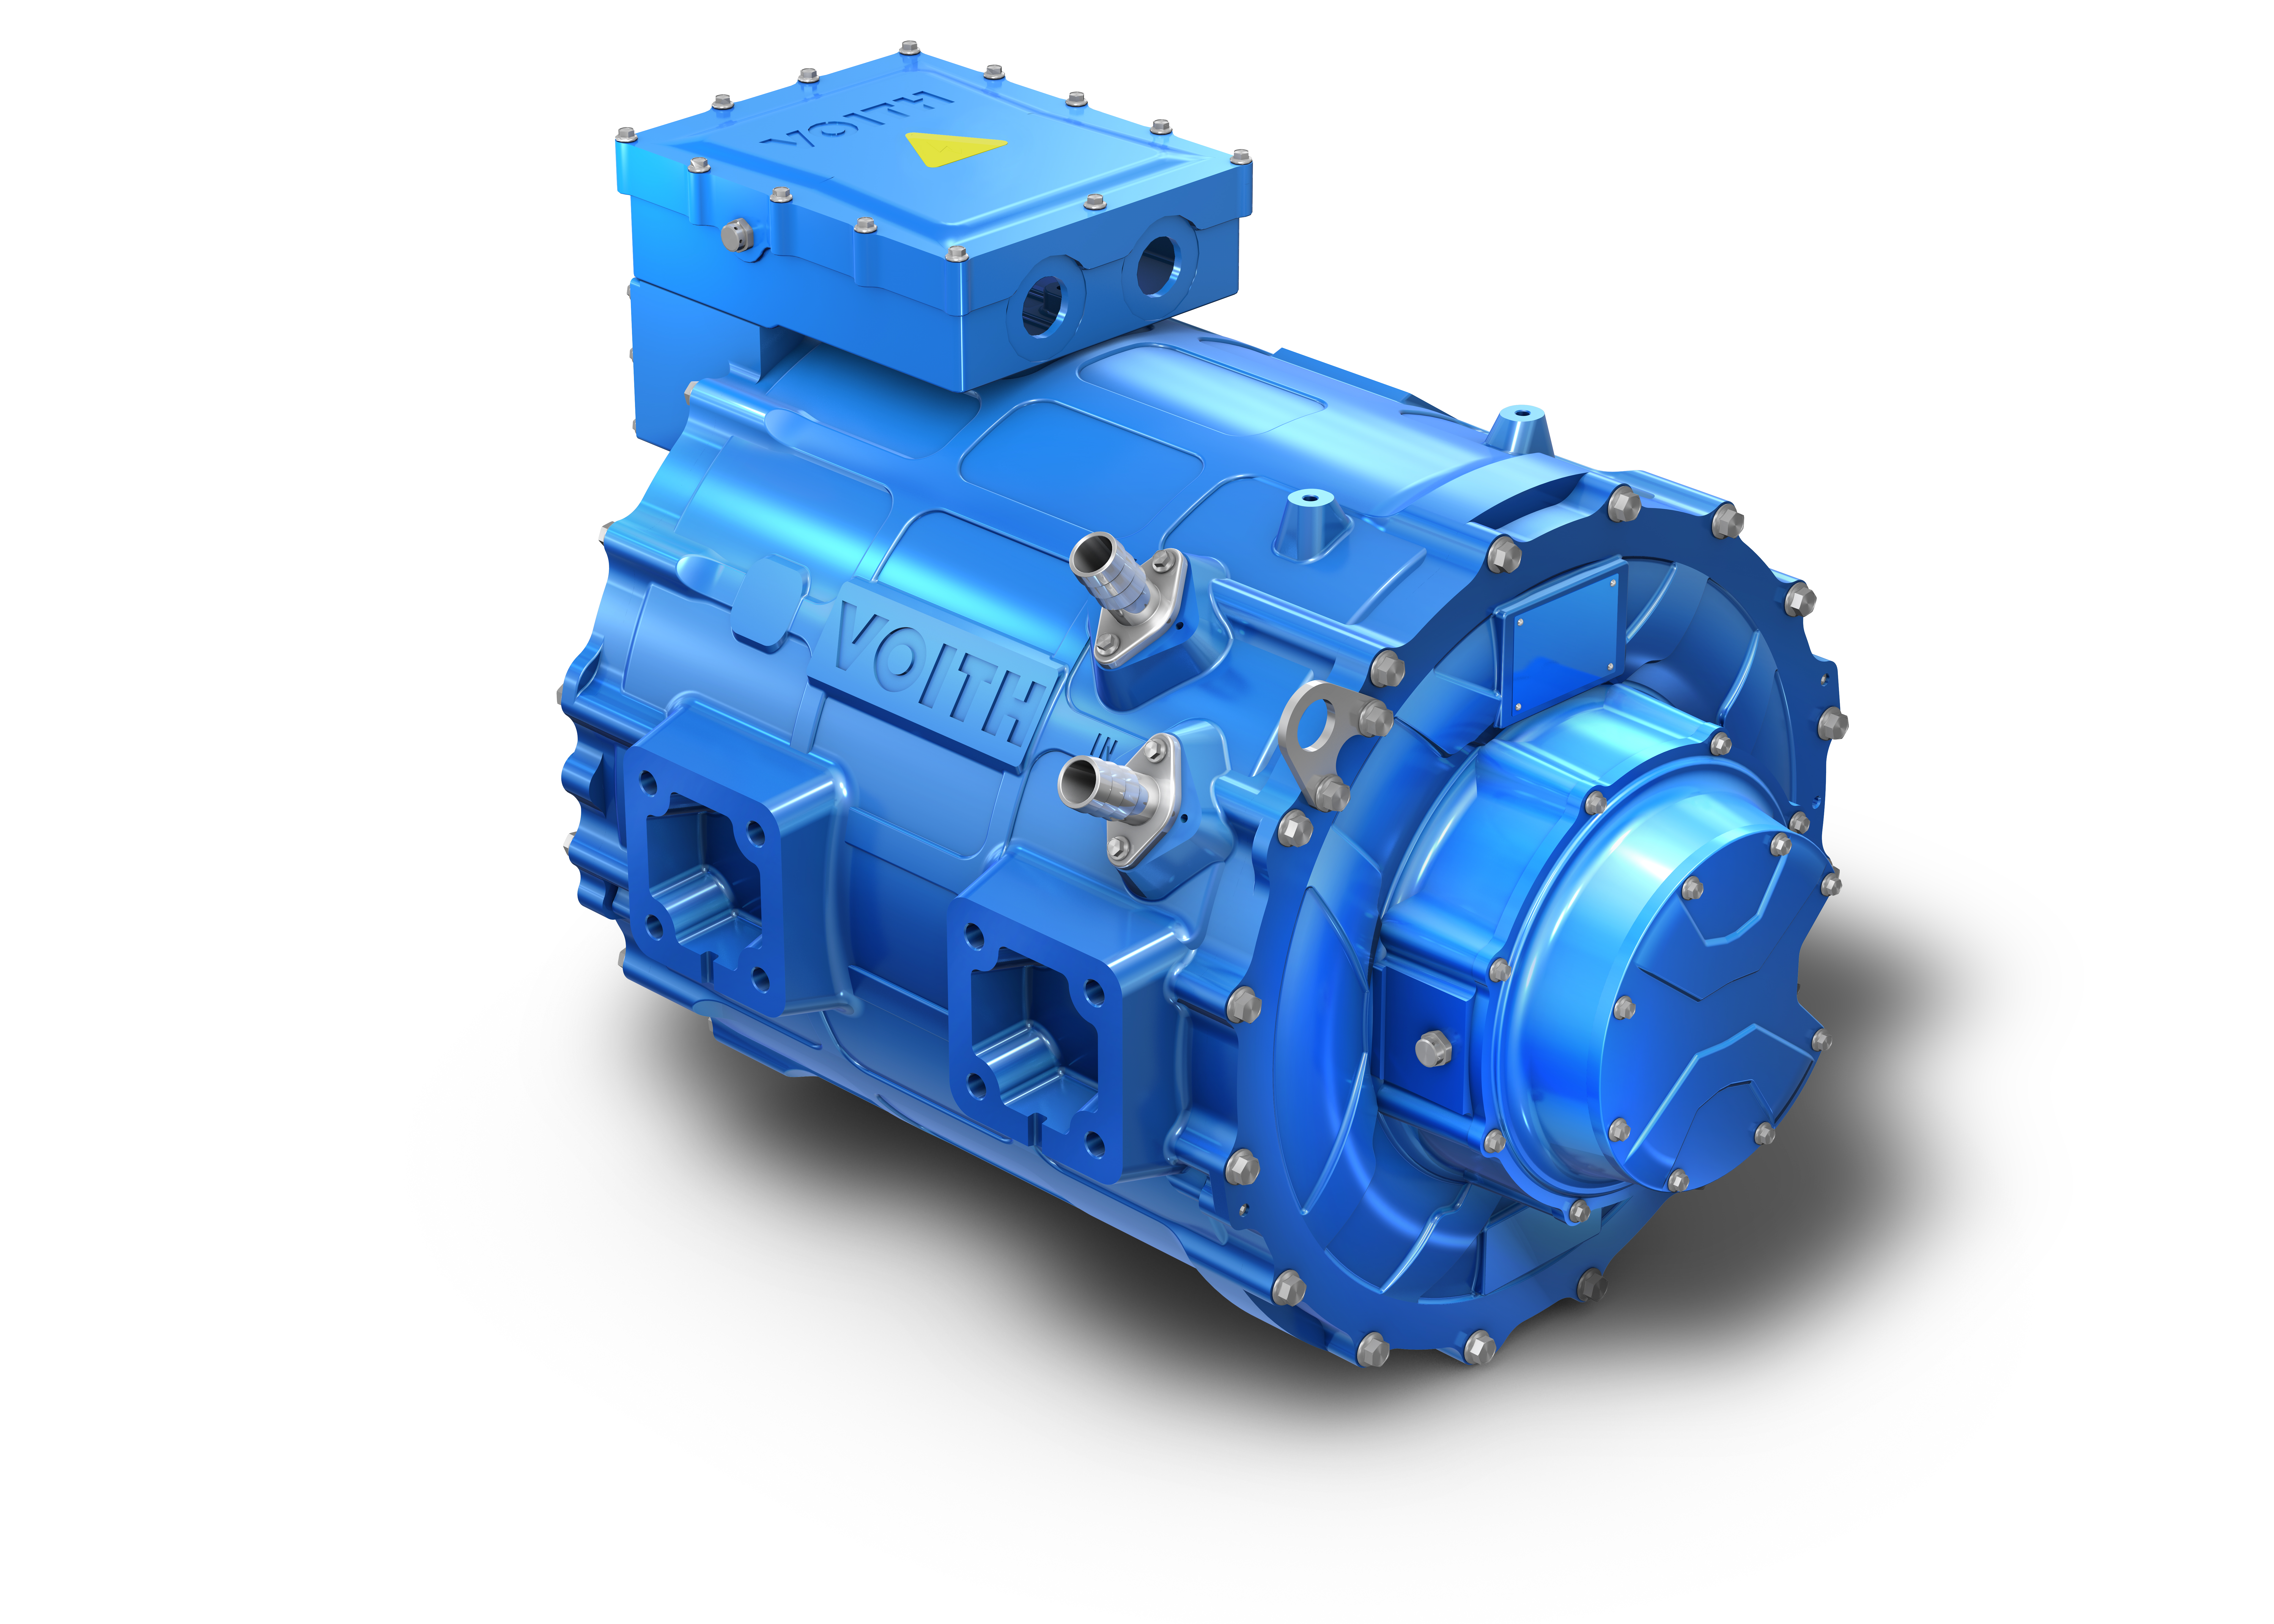 HD-Motor des Voith Electrical Drive System (VEDS) mit 310 kW Dauerleistung und 410 kW Spitzenleistung.